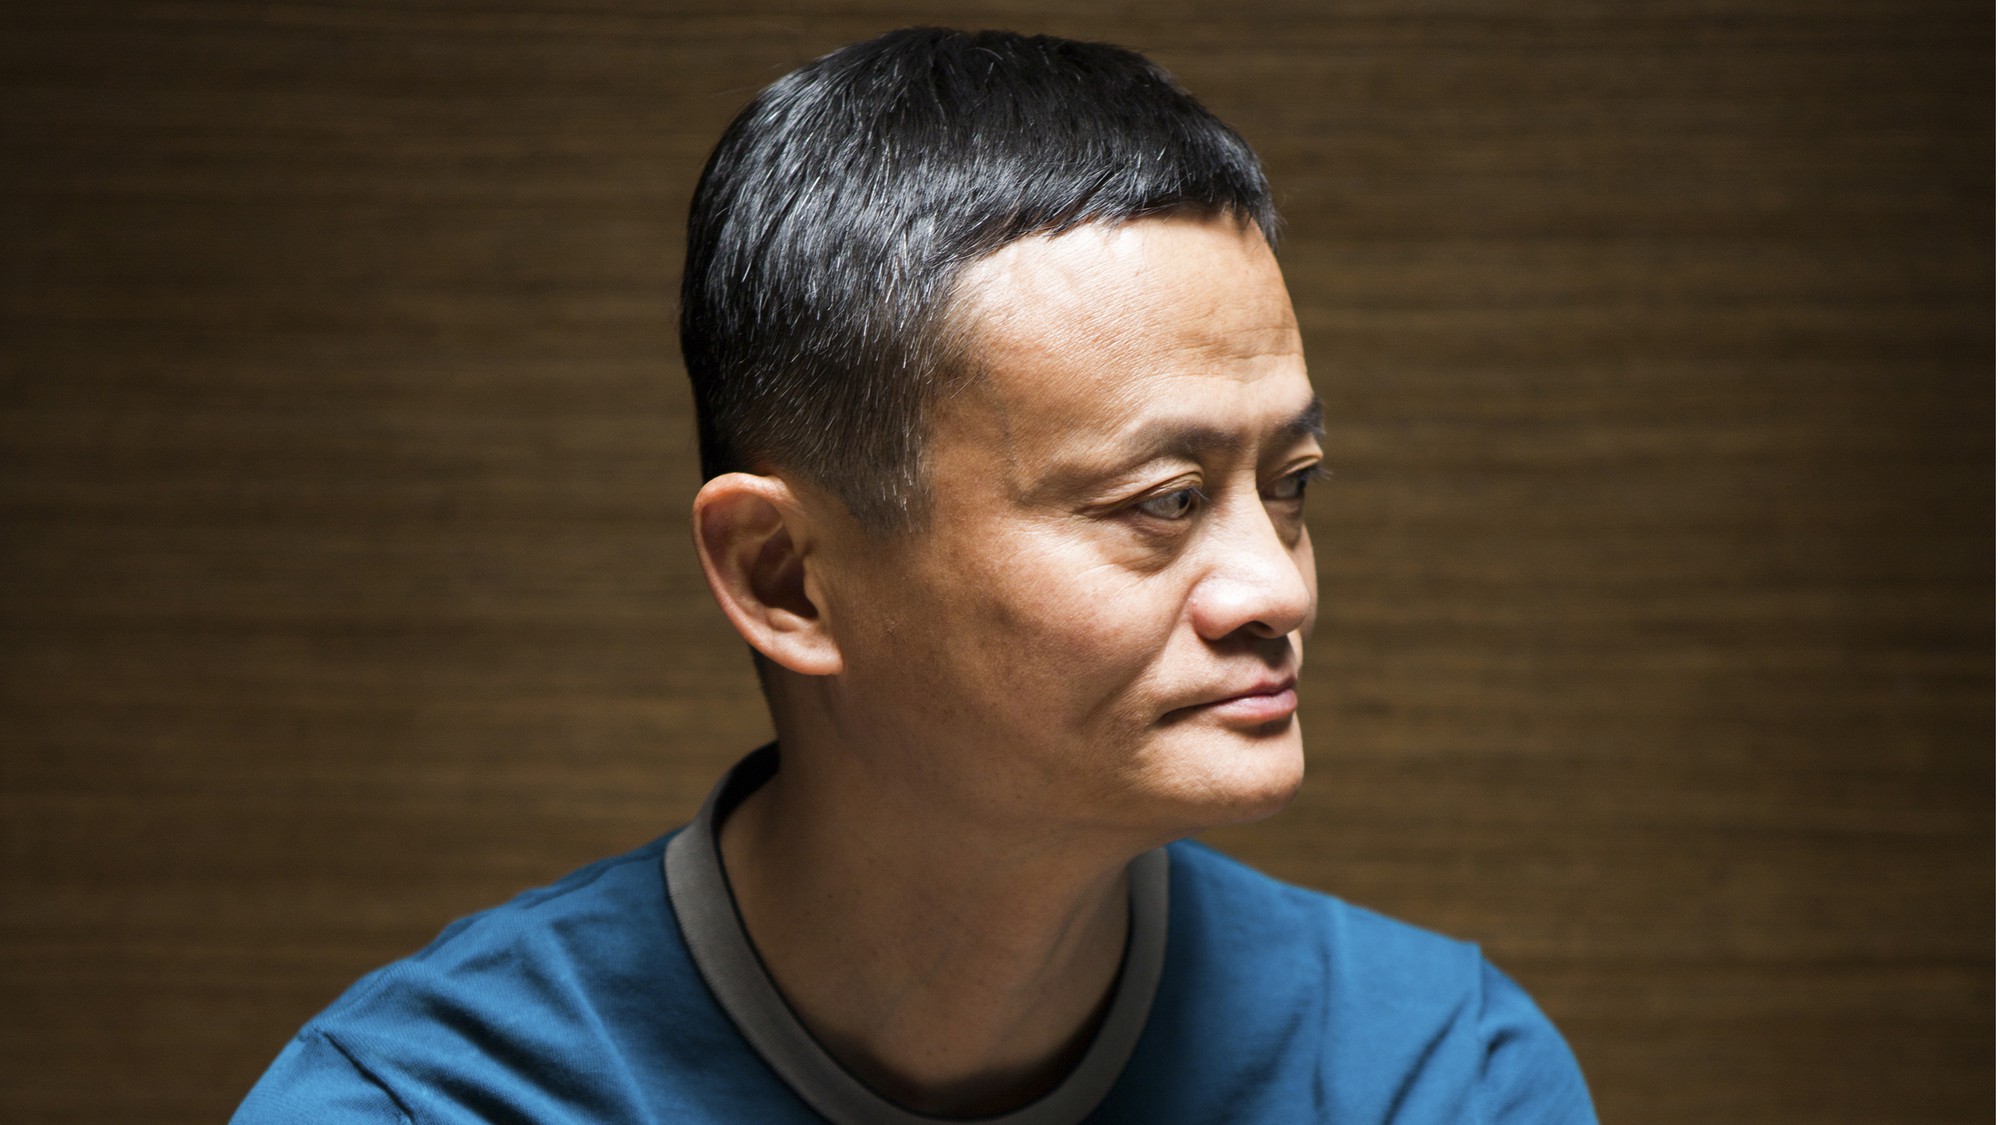 Jack Ma thành lập Alibaba chỉ với 60.000 USD vốn vào năm 1999. 15 năm sau, Alibaba lập kỷ lục với đợt niêm yết cổ phiếu lần đầu huy động về 25 tỷ USD. Tỷ phú 53 tuổi này hiện là người giàu nhất Trung Quốc với tài sản 46,6 tỷ USD.